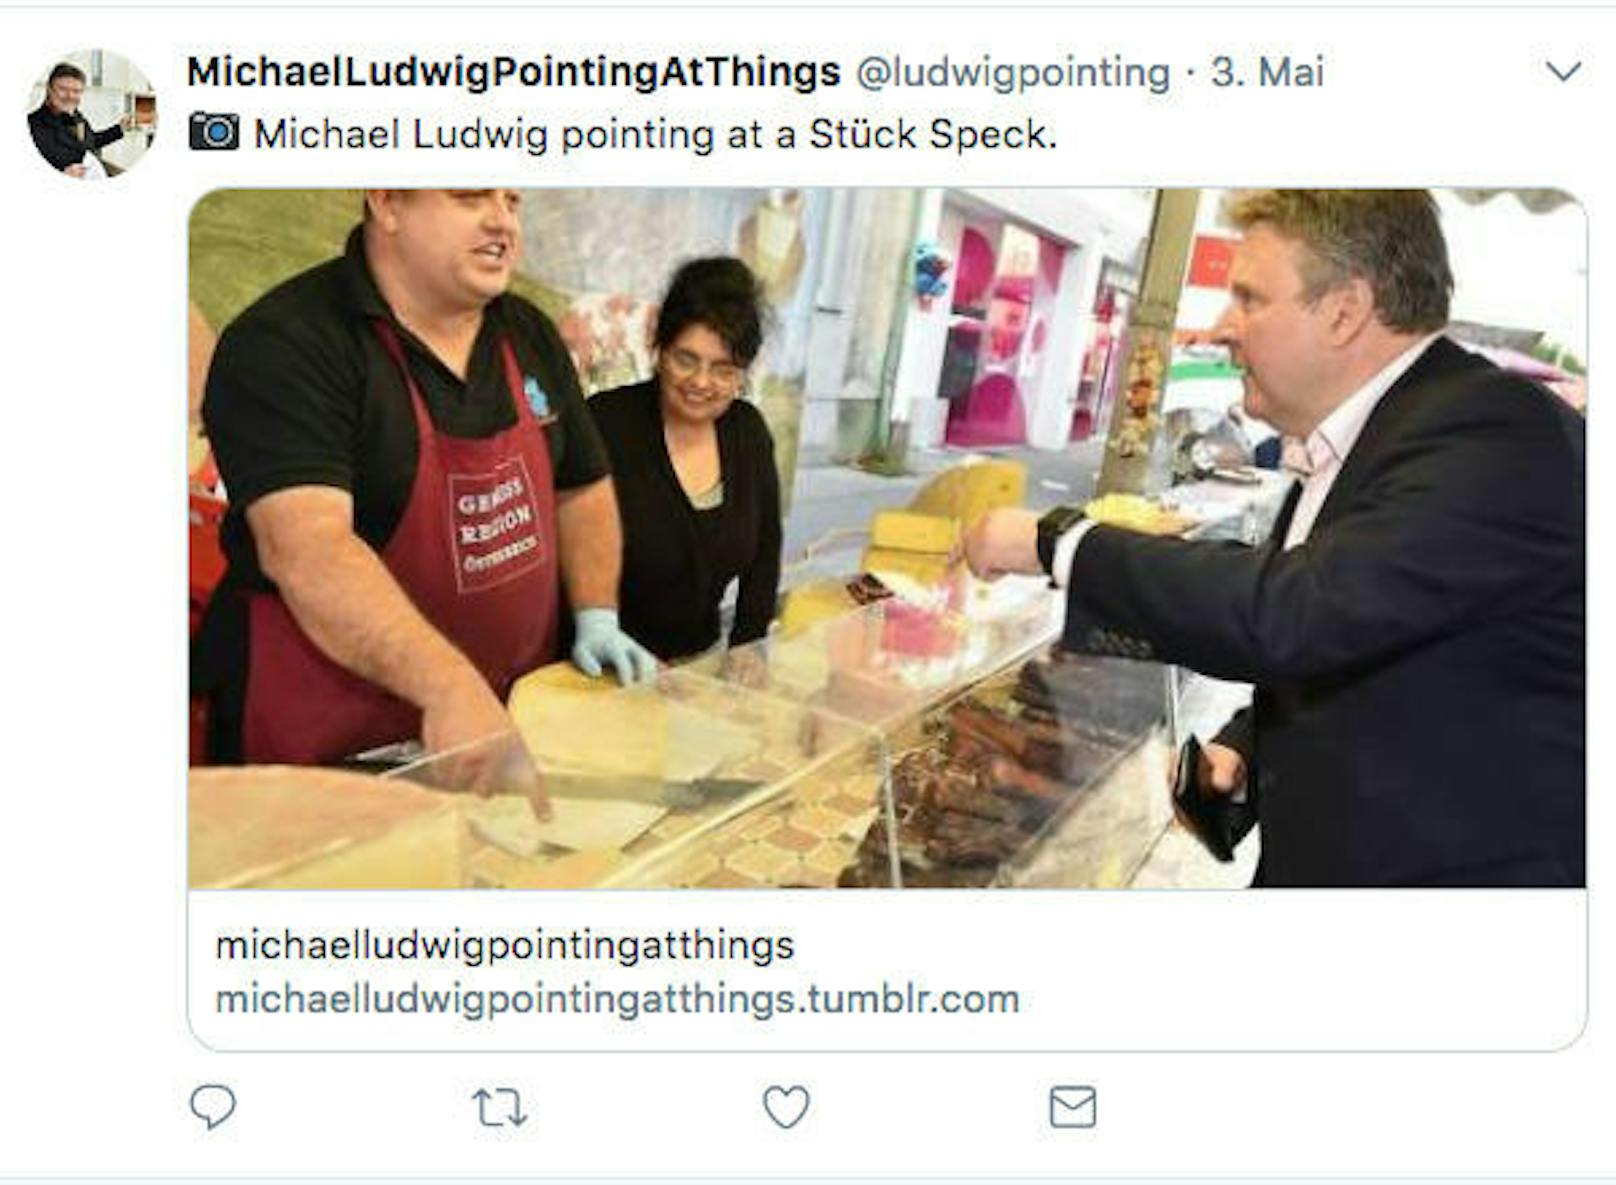 Wohin mit den Händen, wenn man fotografiert wird? Stadtchef Michael Ludwig zeigt gerne auf Dinge. Jetzt gibts eine eigene tumblr-Seite mit Zeige-Fotos: https://michaelludwigpointingatthings.tumblr.com